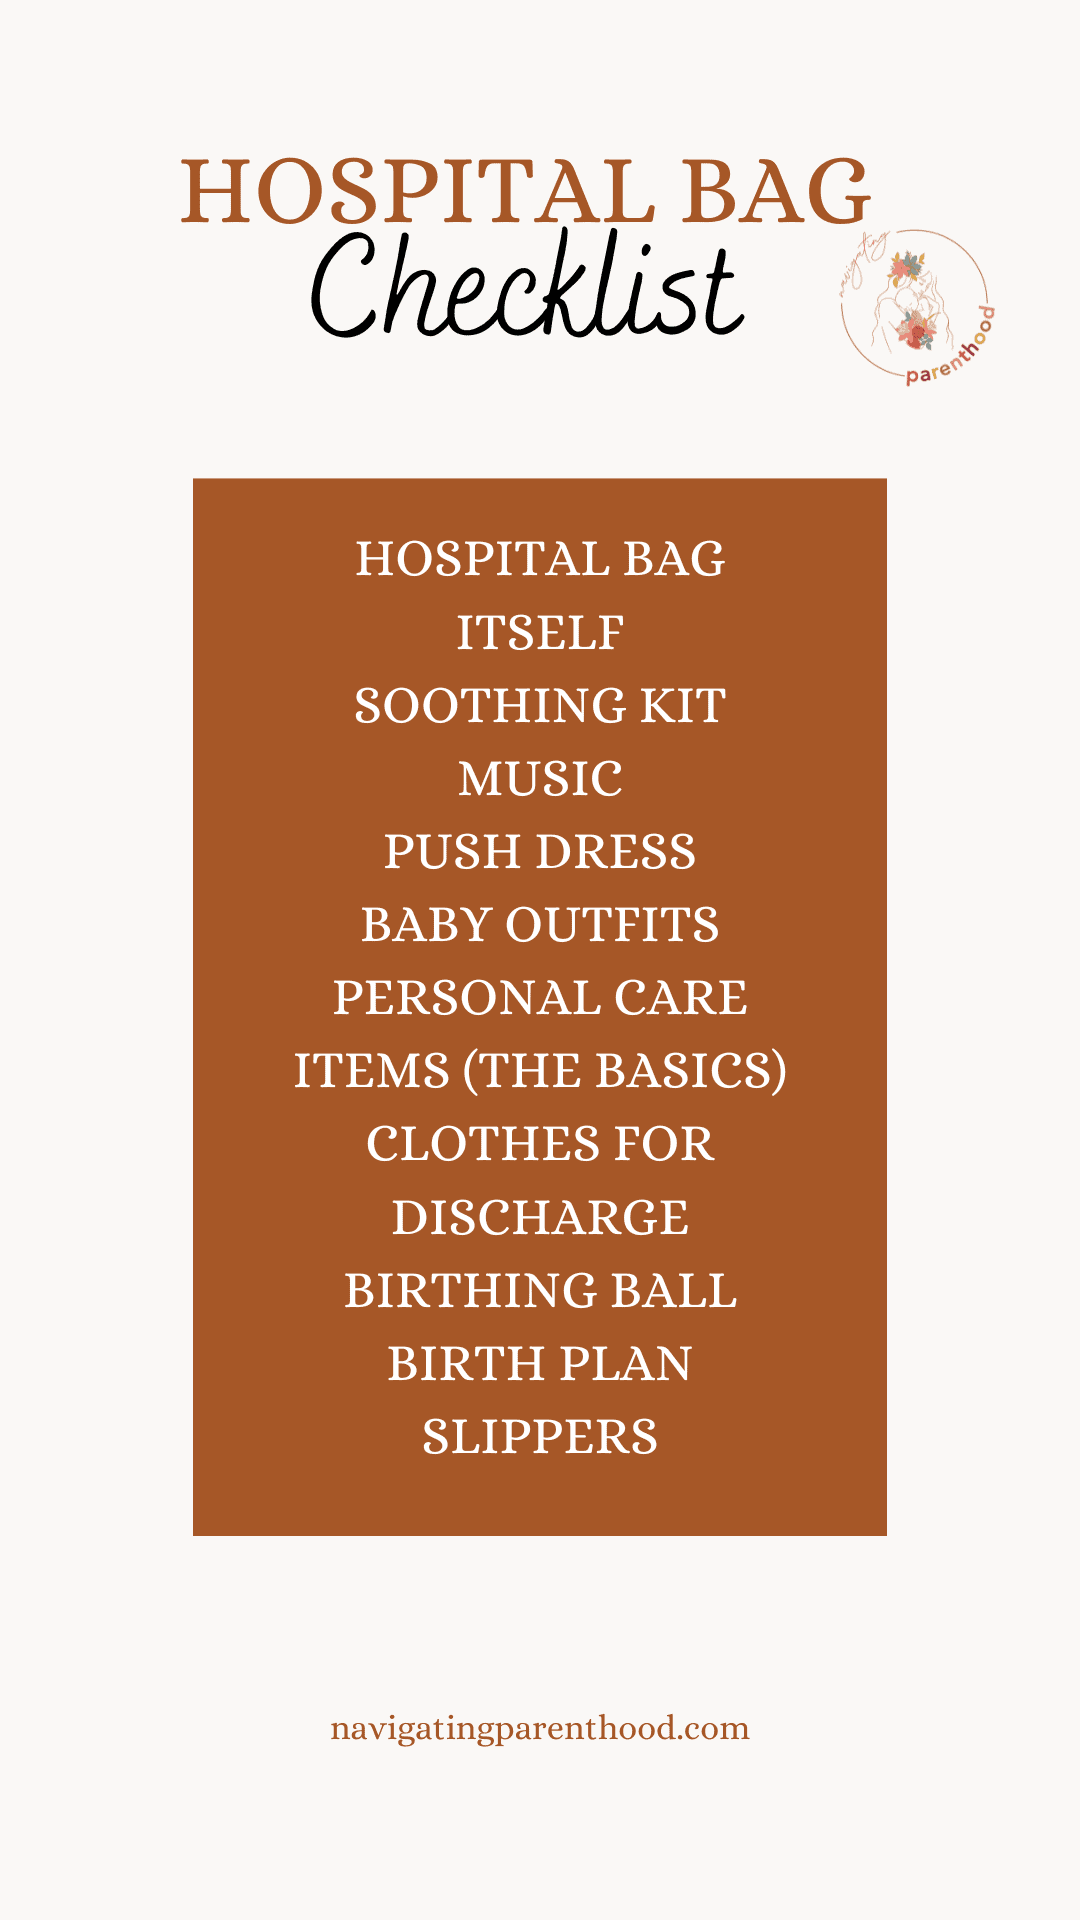 hospital bag checklist for mom